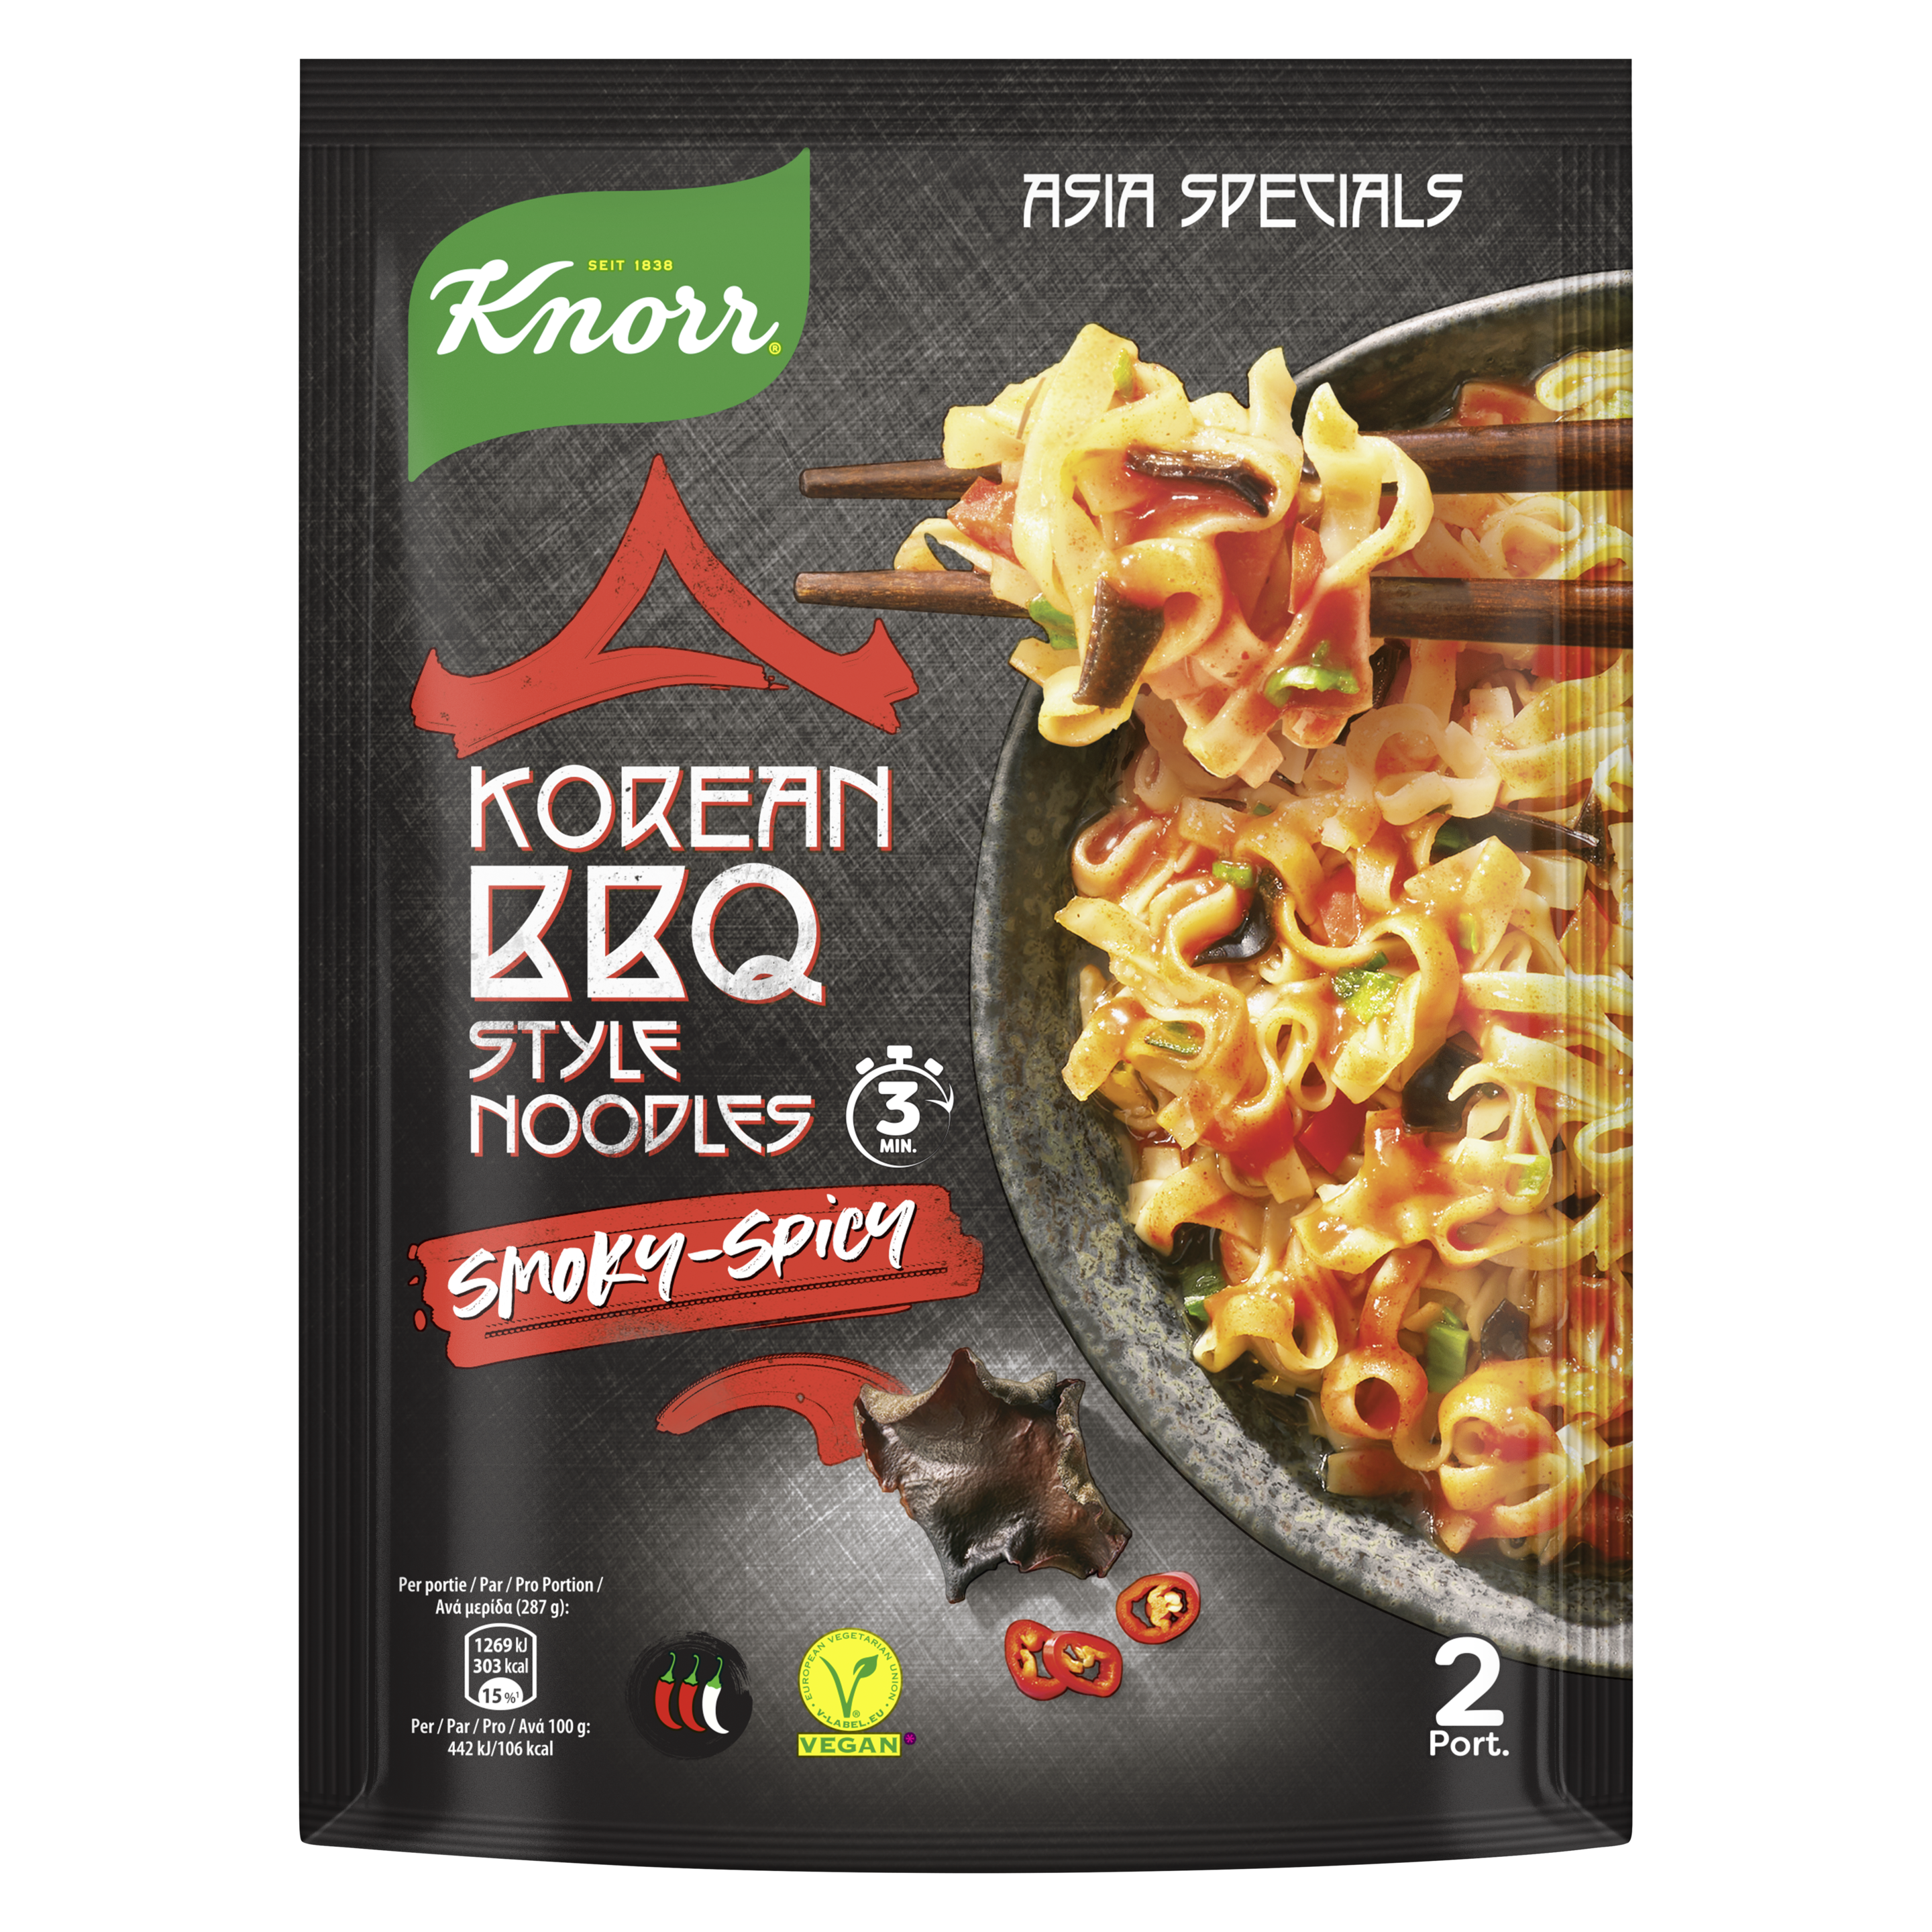 Knorr Special Noodles Korean BBQ